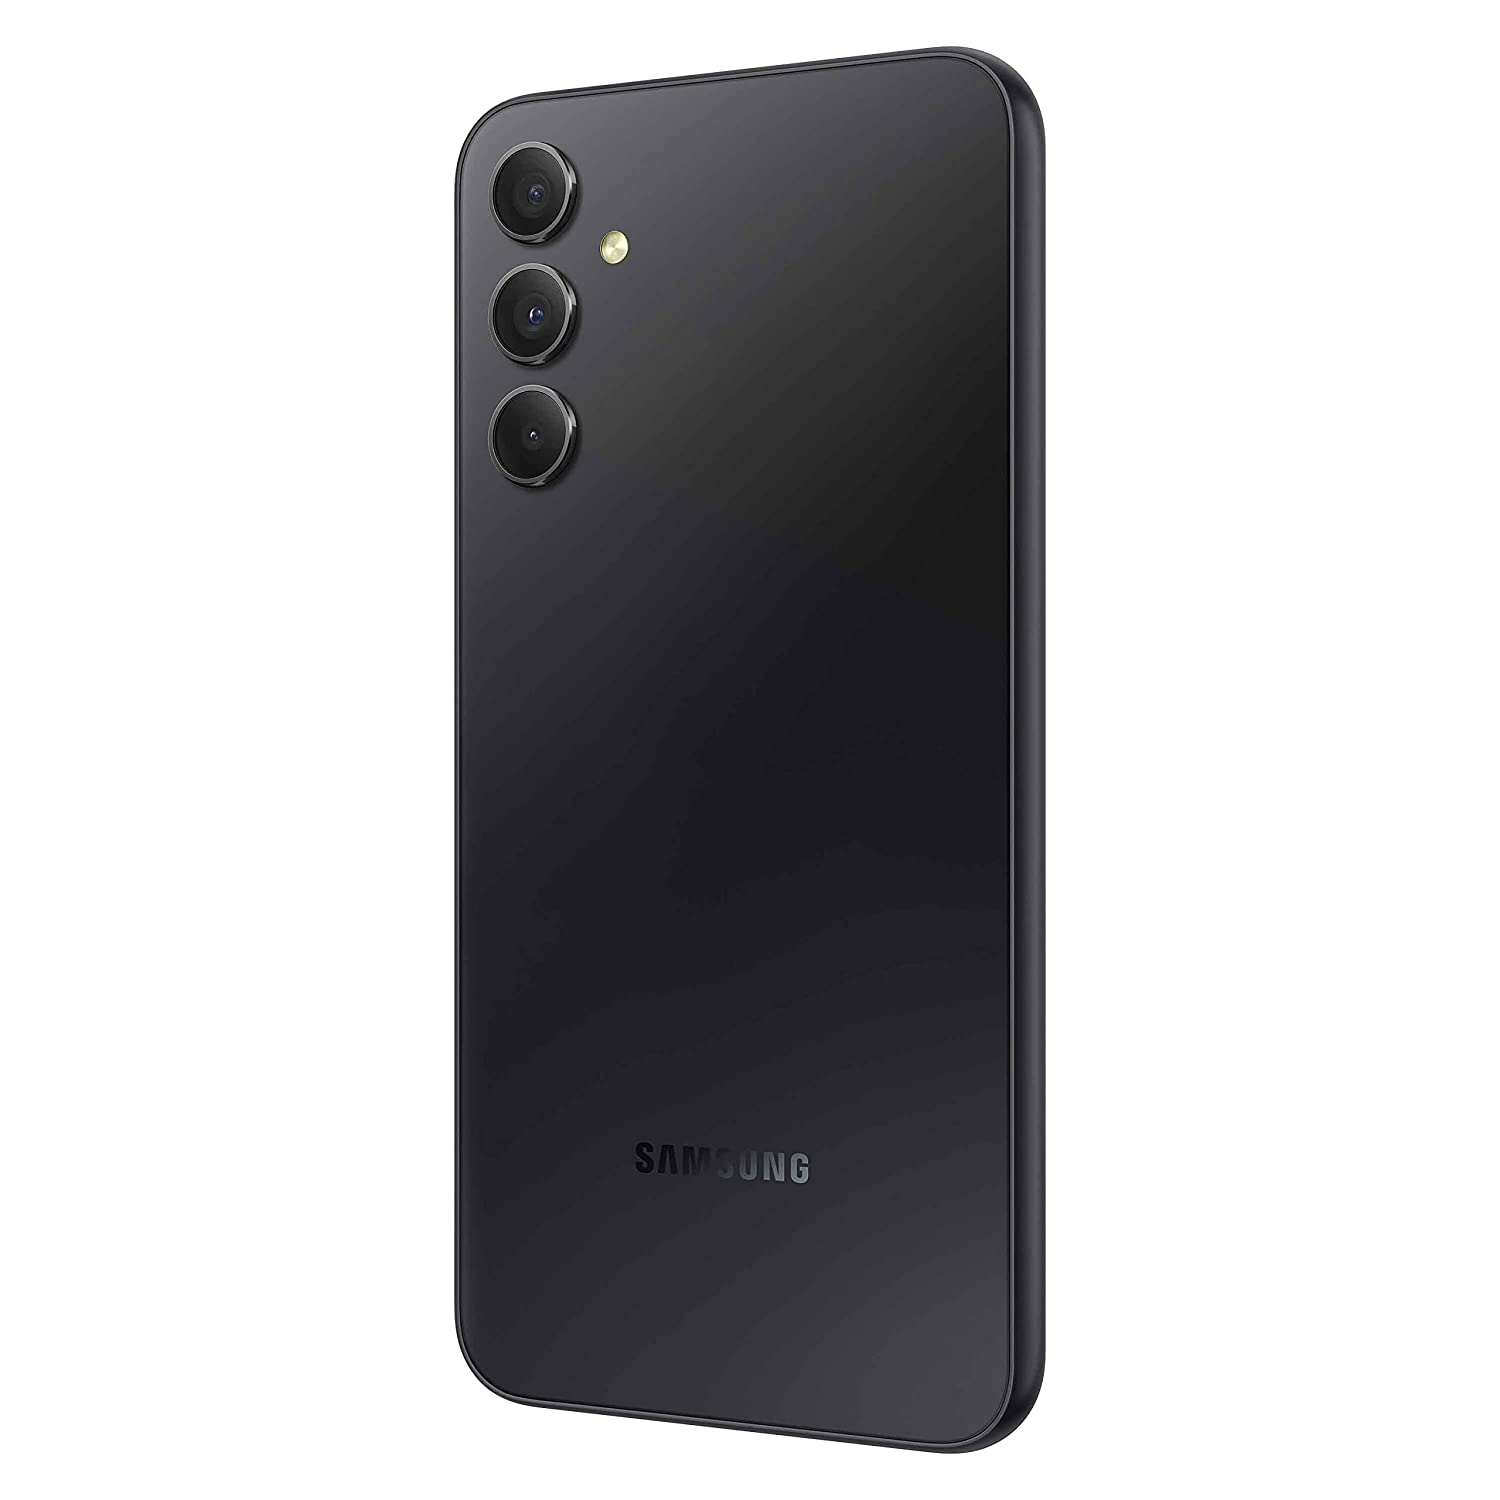 Samsung Galaxy A34 5G 6GB 128GB - Graphite 